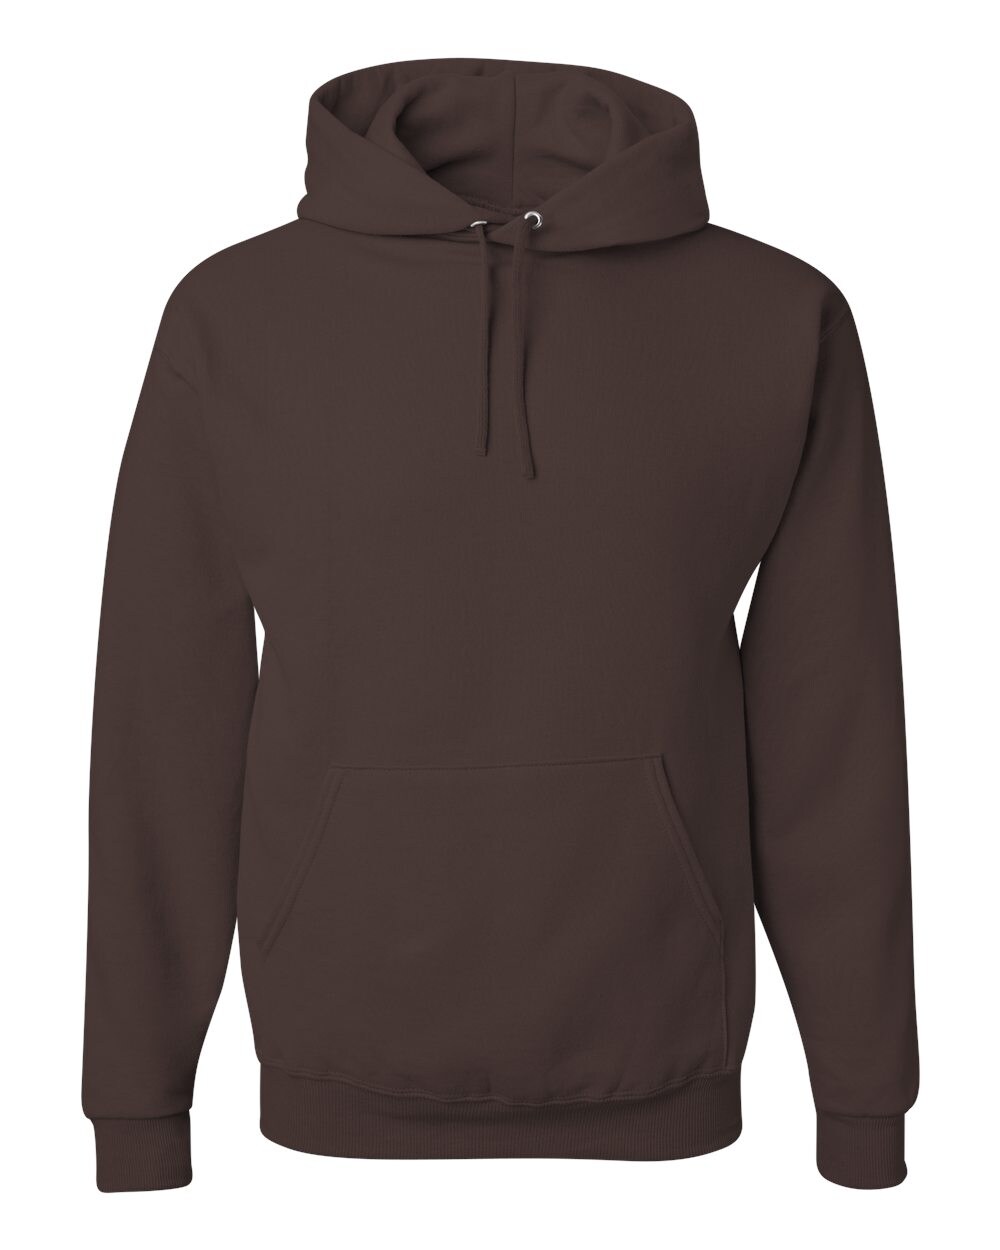 JERZEES&#xAE; NuBlend Hooded Sweatshirt